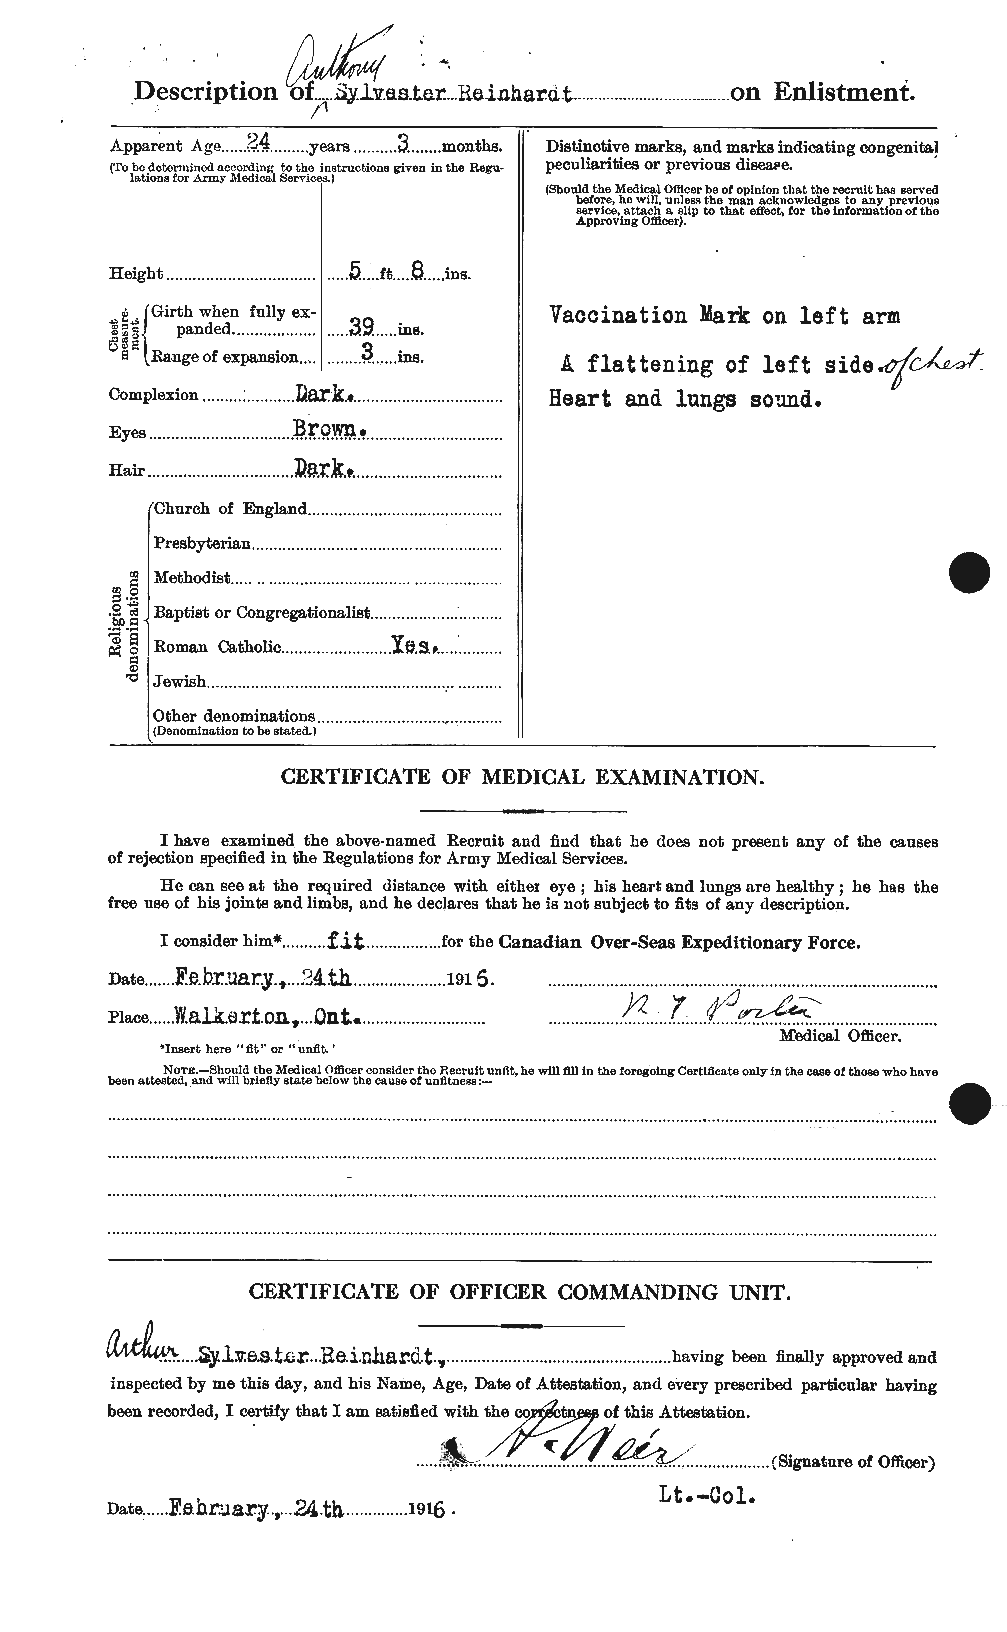 Dossiers du Personnel de la Première Guerre mondiale - CEC 599367b